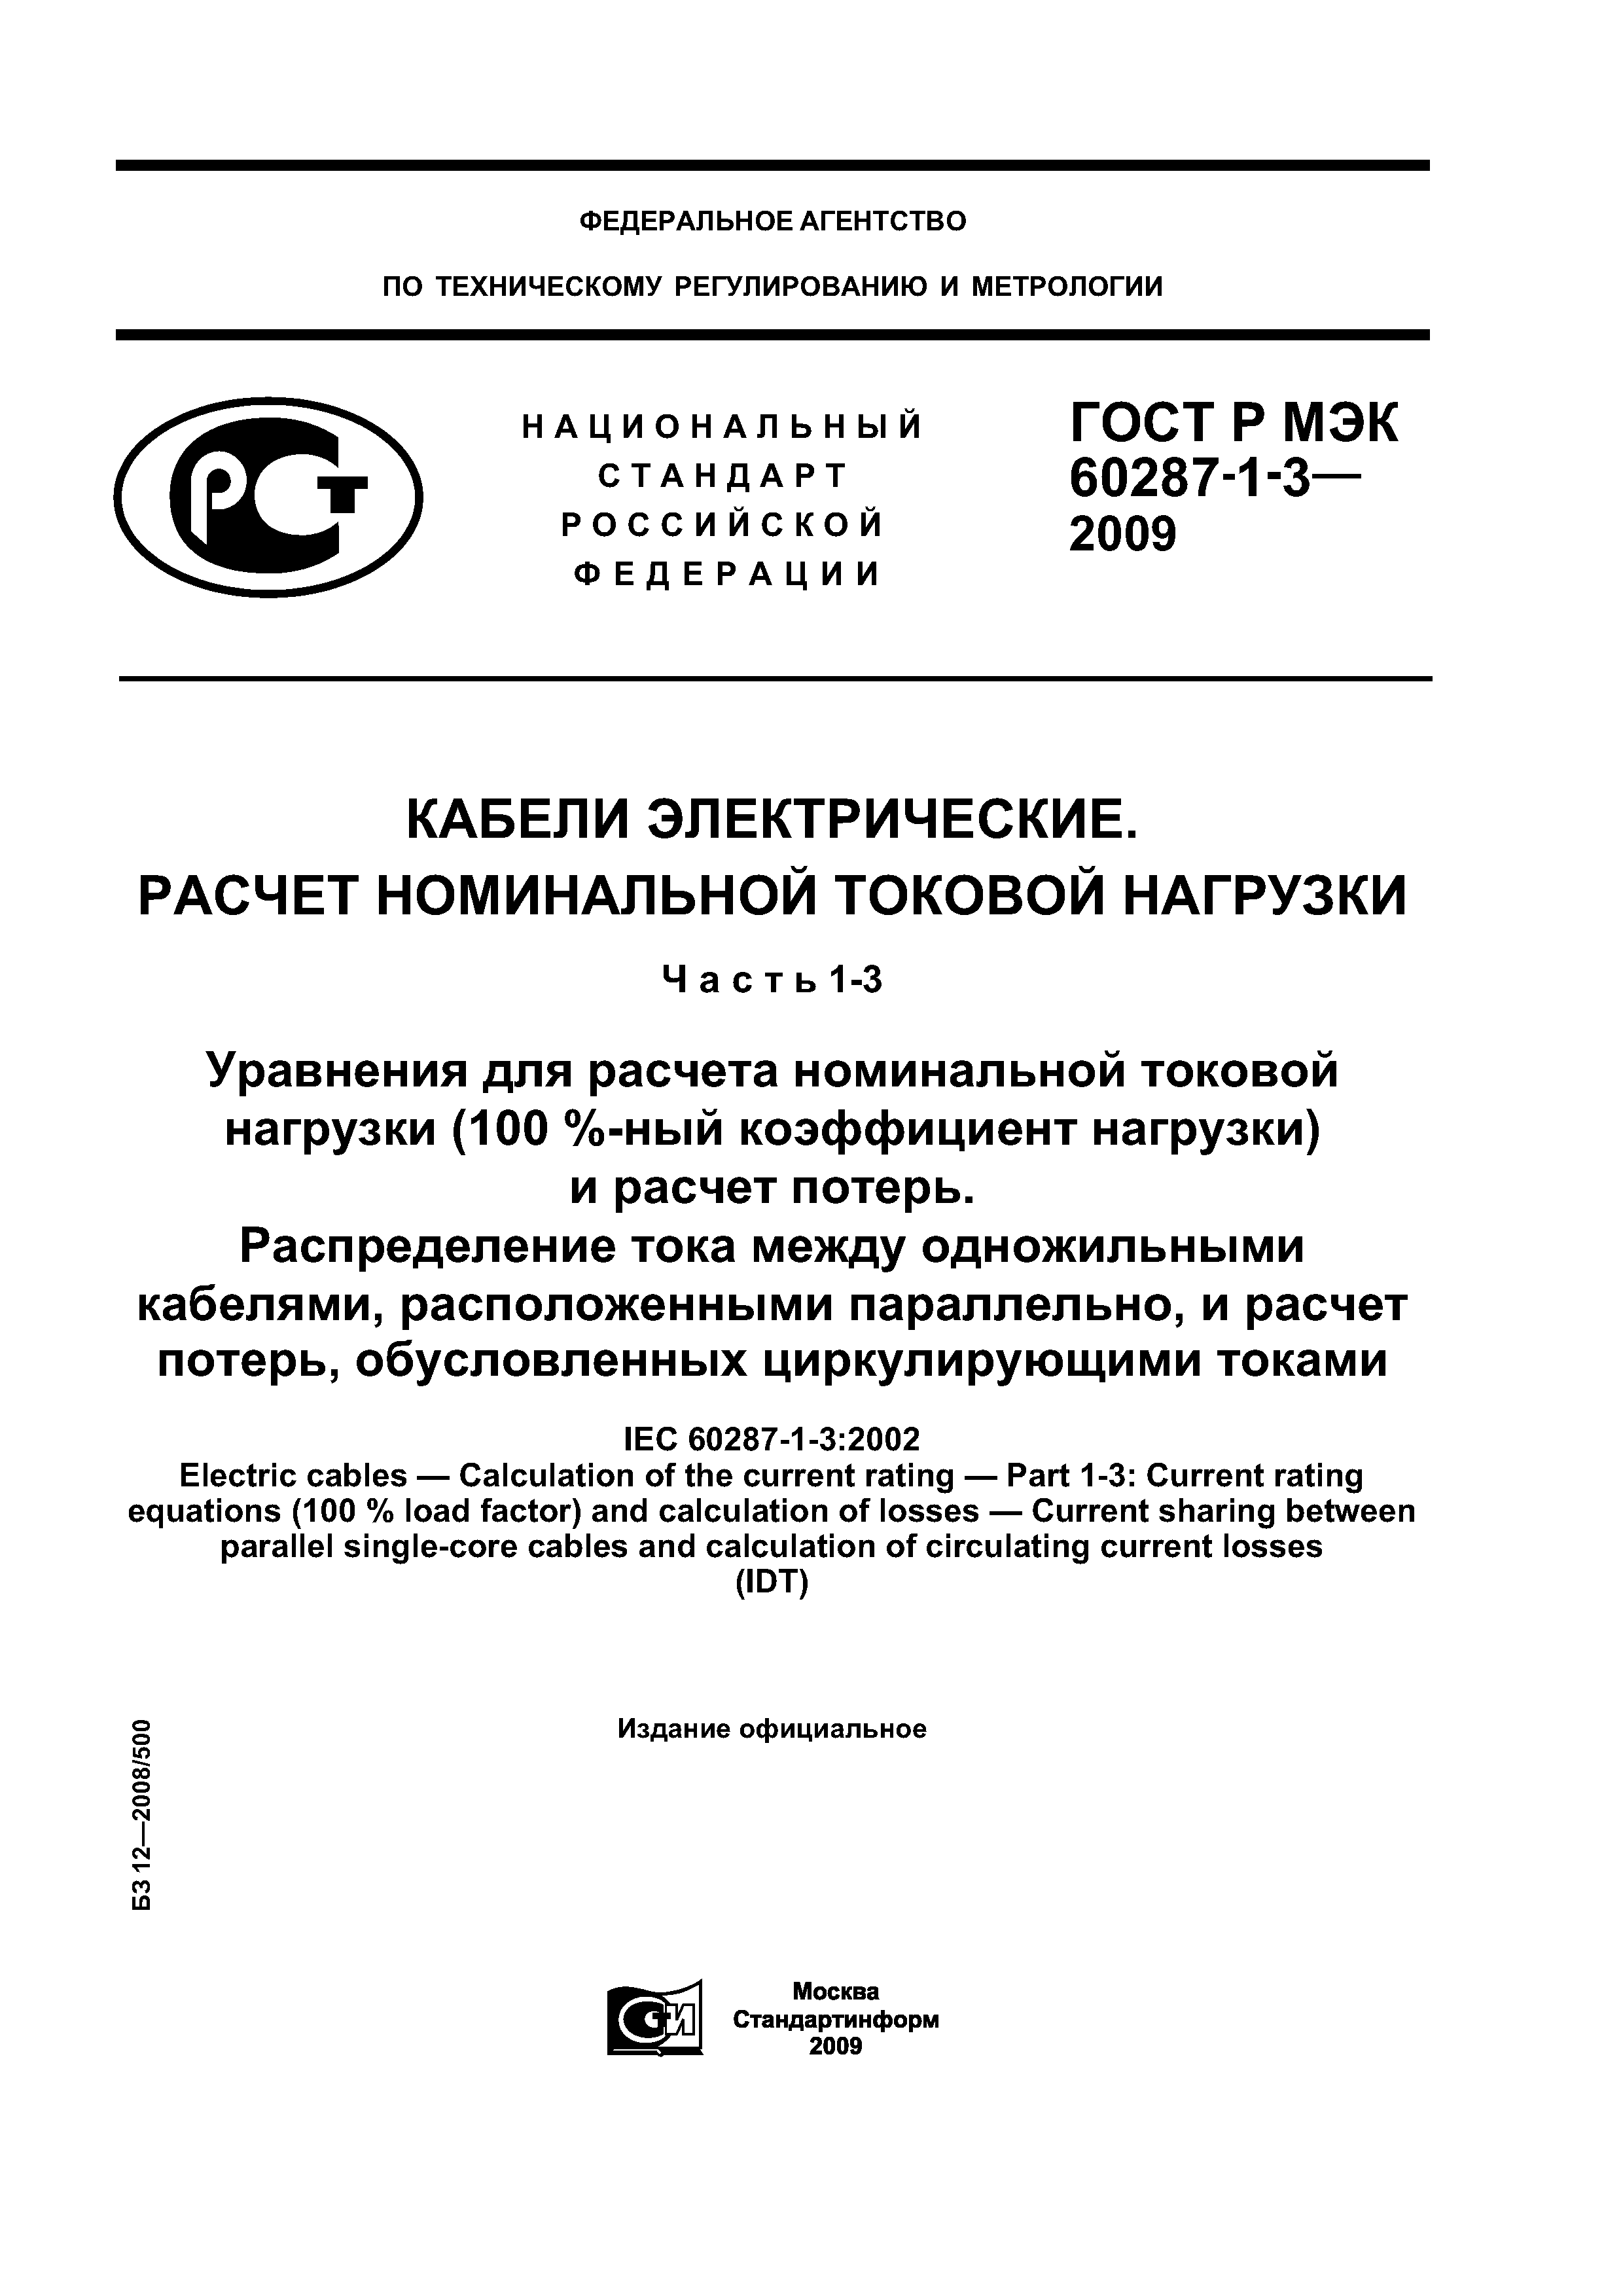 ГОСТ Р МЭК 60287-1-3-2009